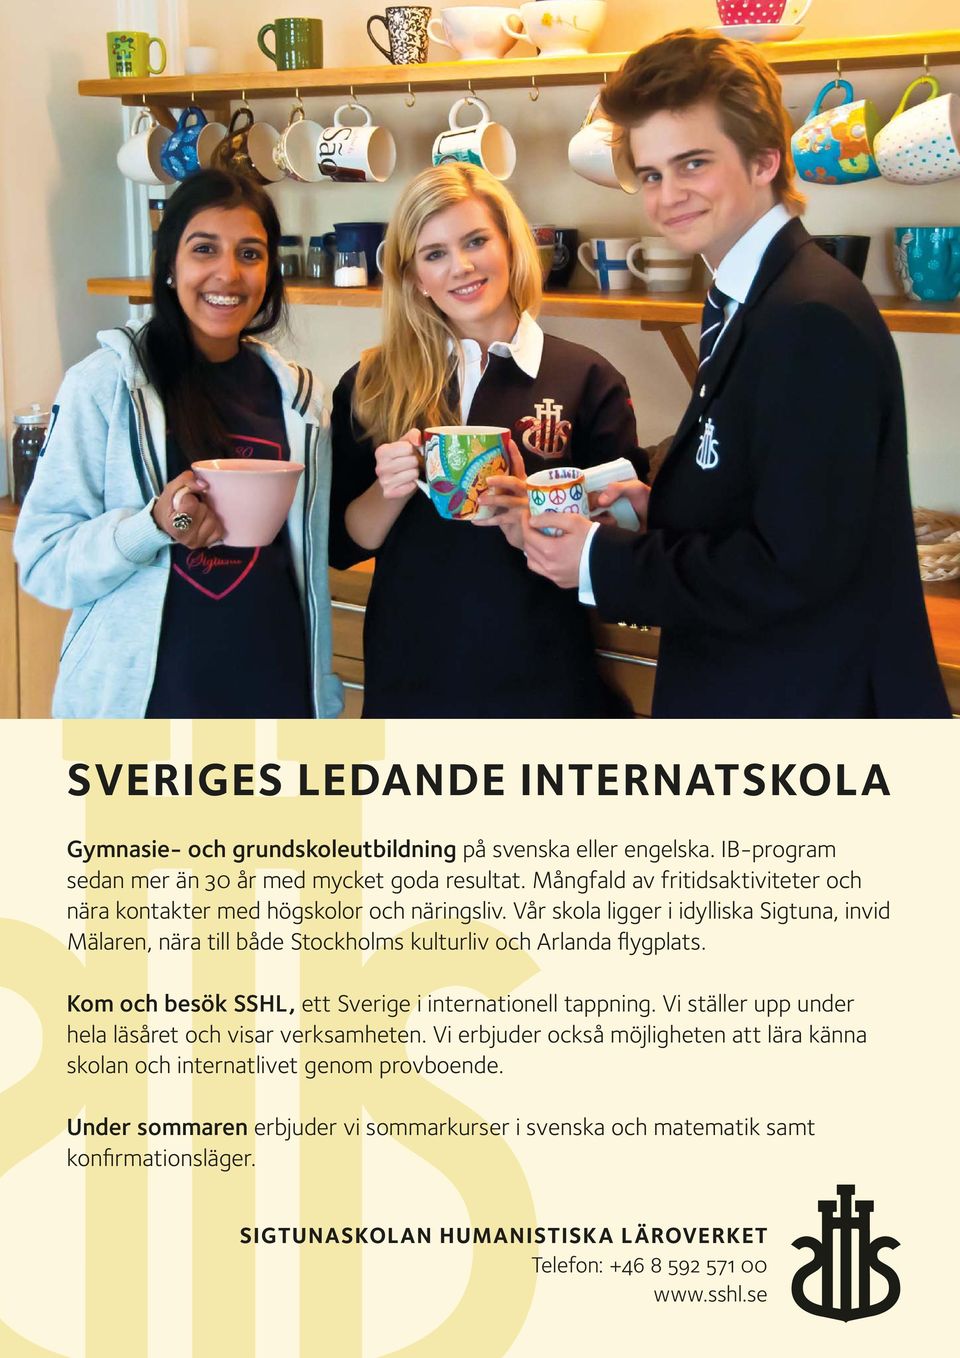 Vår skola ligger i idylliska Sigtuna, invid Mälaren, nära till både Stockholms kulturliv och Arlanda flygplats. Kom och besök SSHL, ett Sverige i internationell tappning.